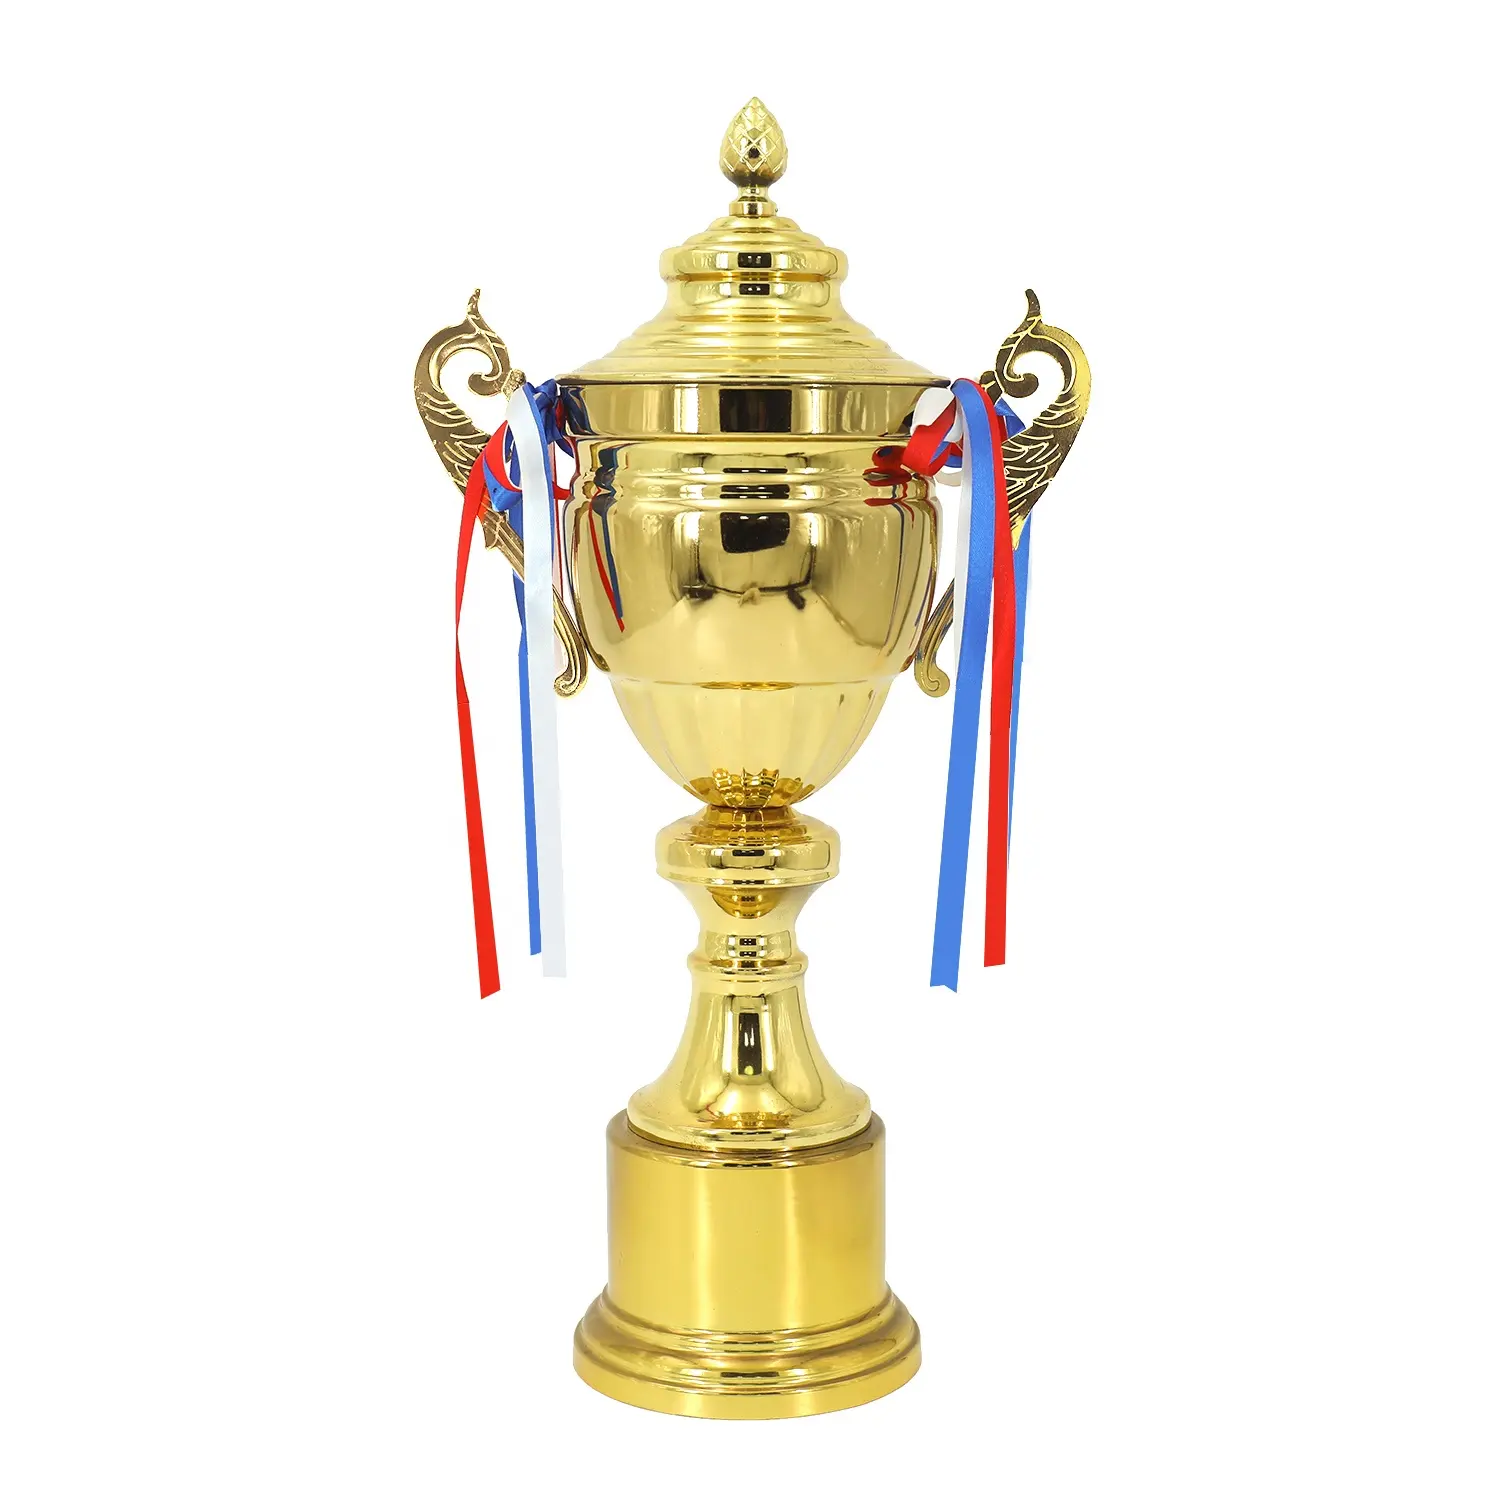 Collezione Yiwu trofeo professionale calcio varietà coppa oro metallo trofeo calcio all'ingrosso trofeo calcio